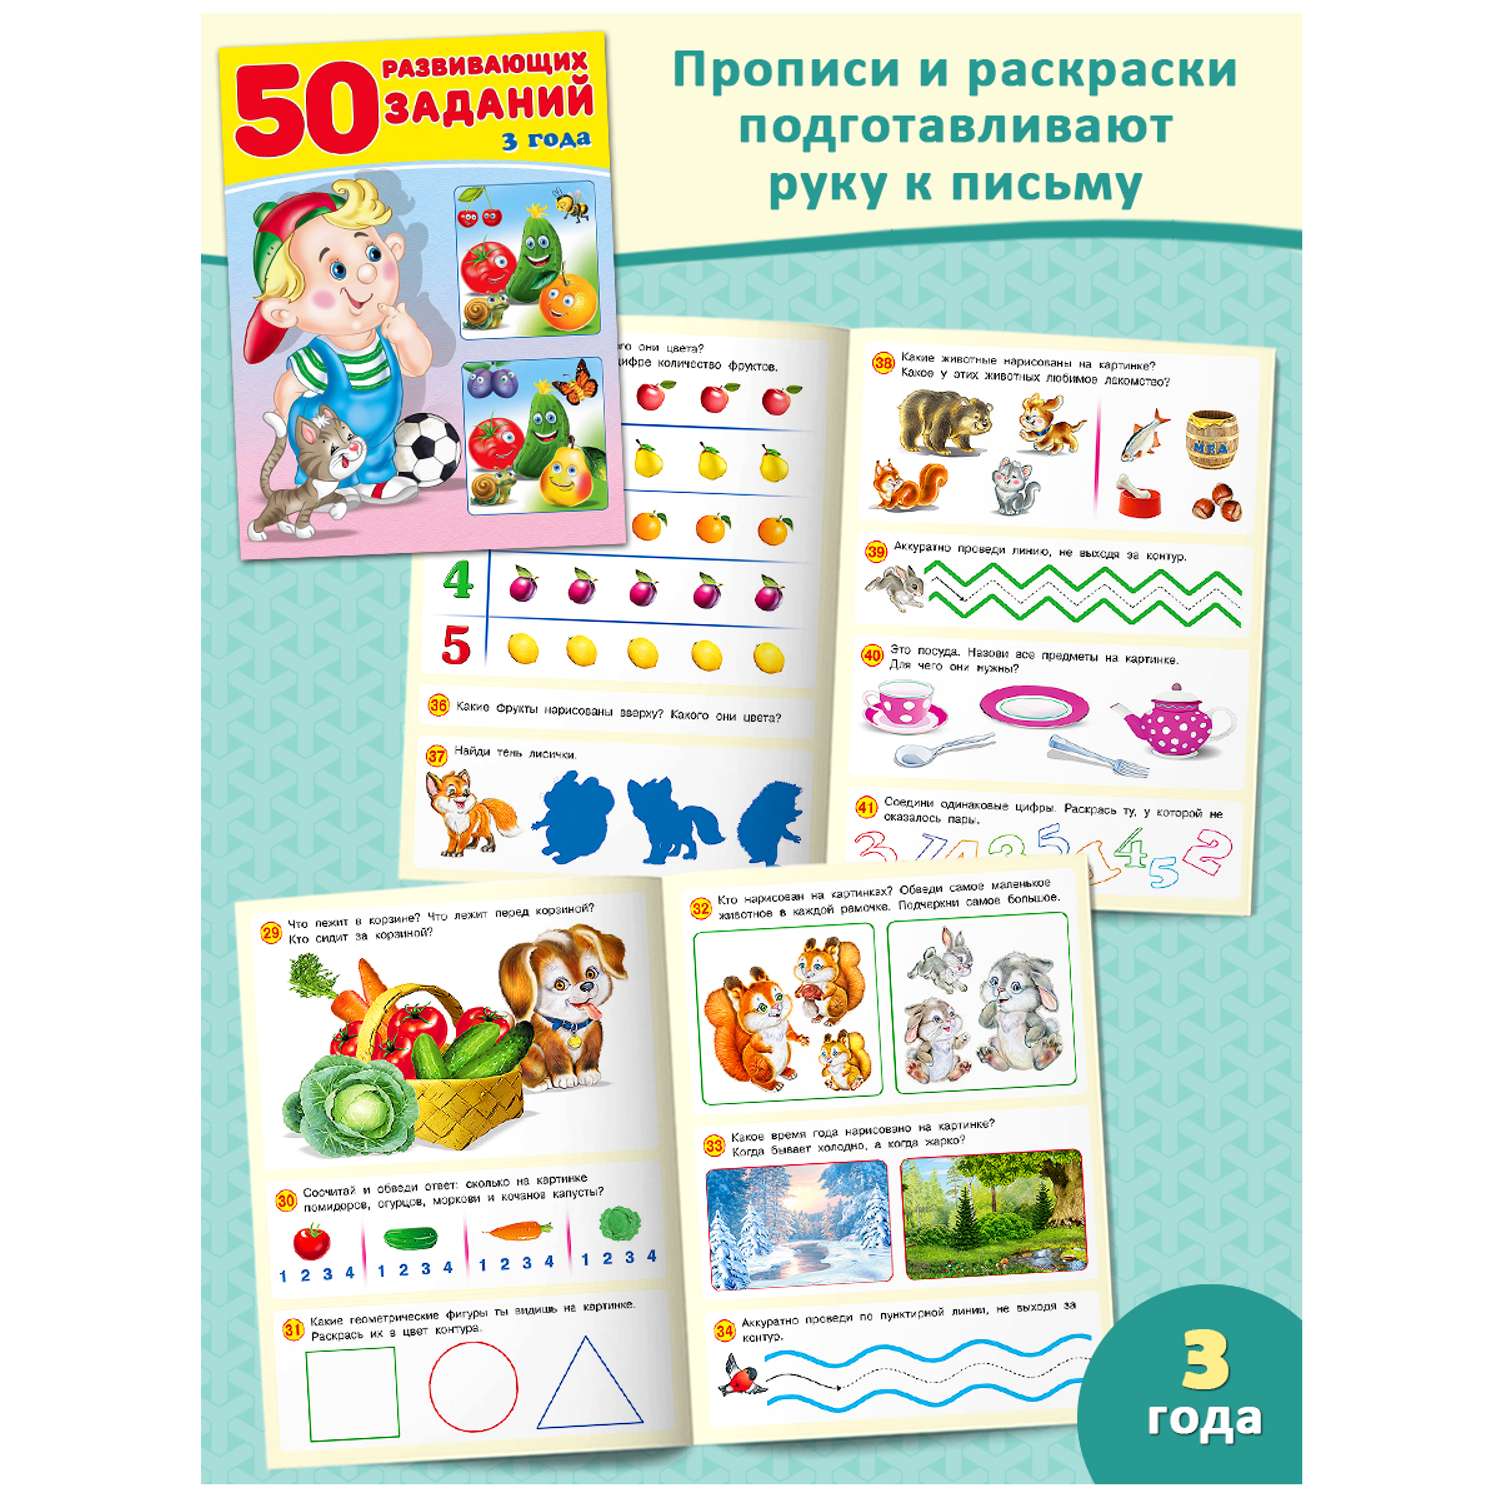 Набор из 3-х книг Фламинго Для детей развивающие Задания на развитие речи памяти внимания Подготовка к школе - фото 3